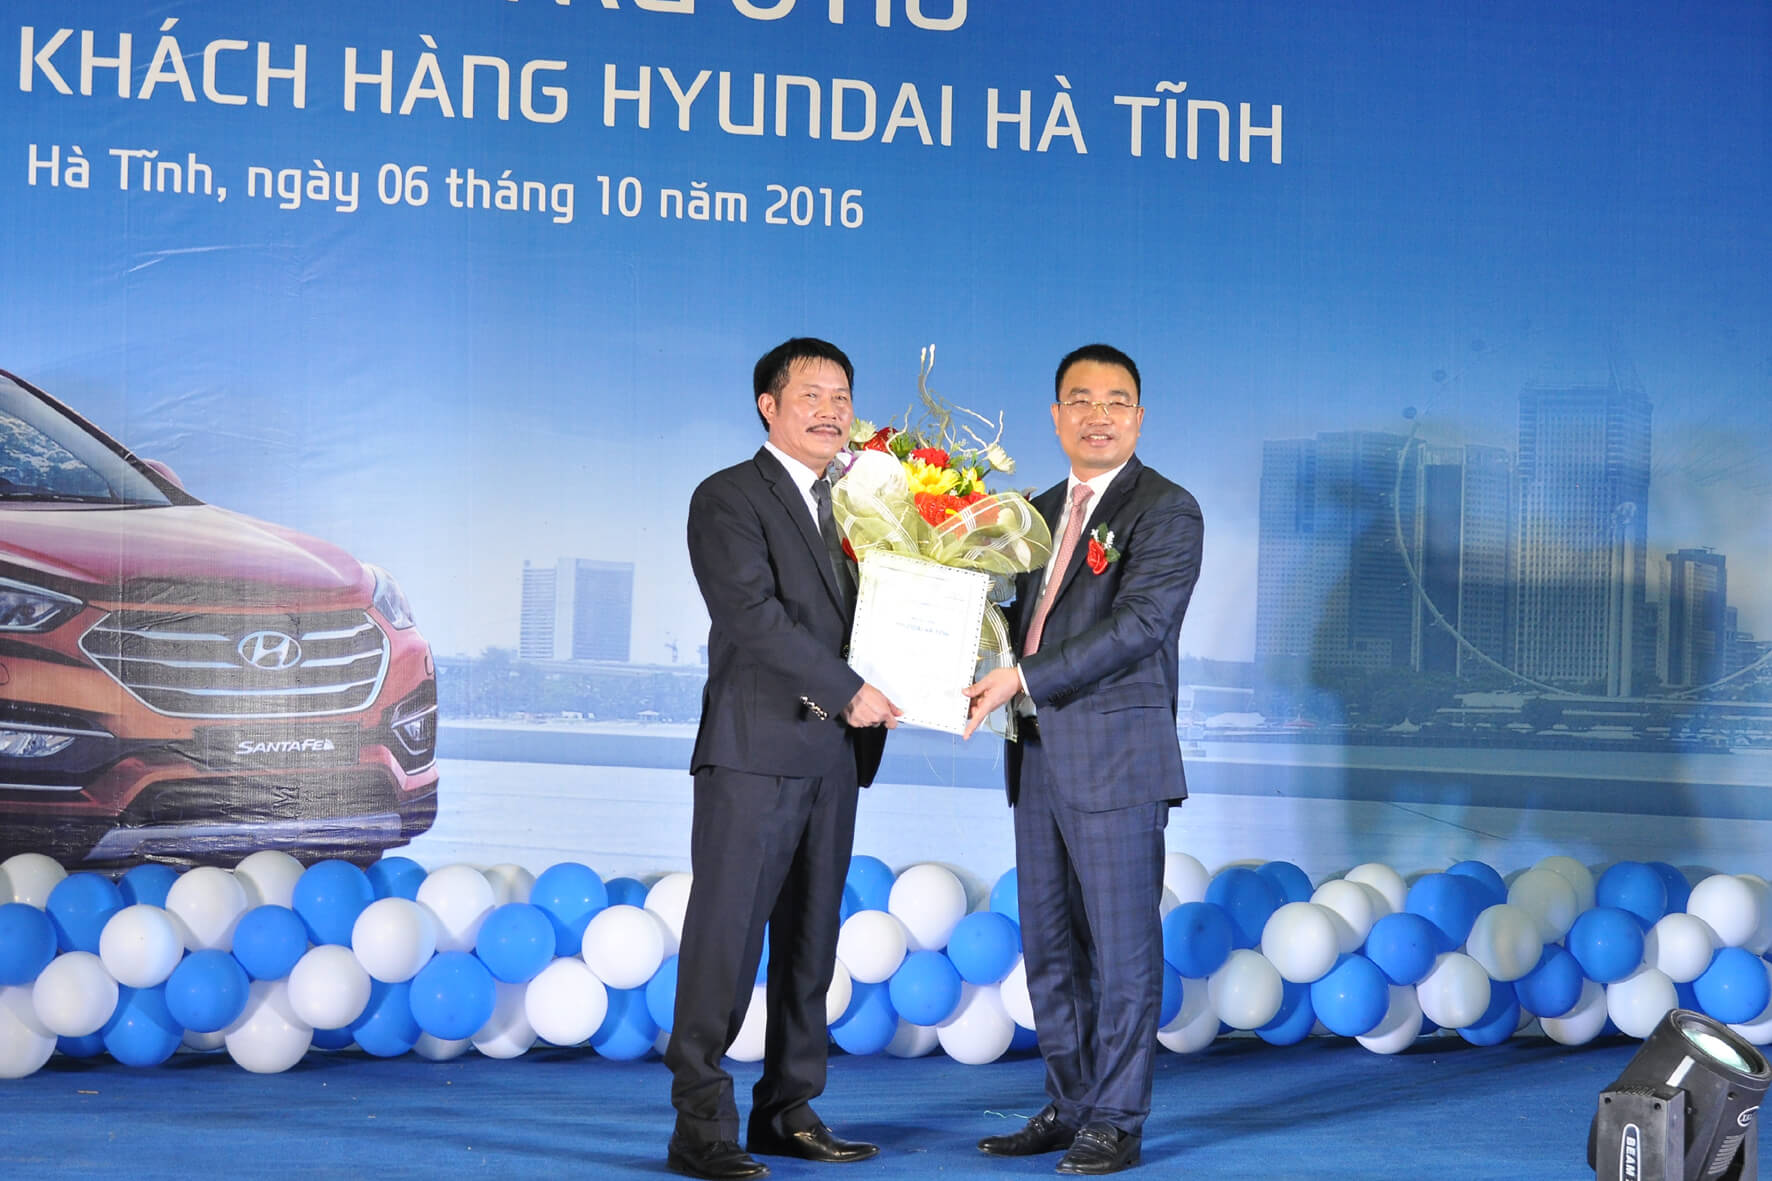 Hyundai Hà Tĩnh được lắp đặt trang thiết bị hiện đại theo tiêu chuẩn quổc tế